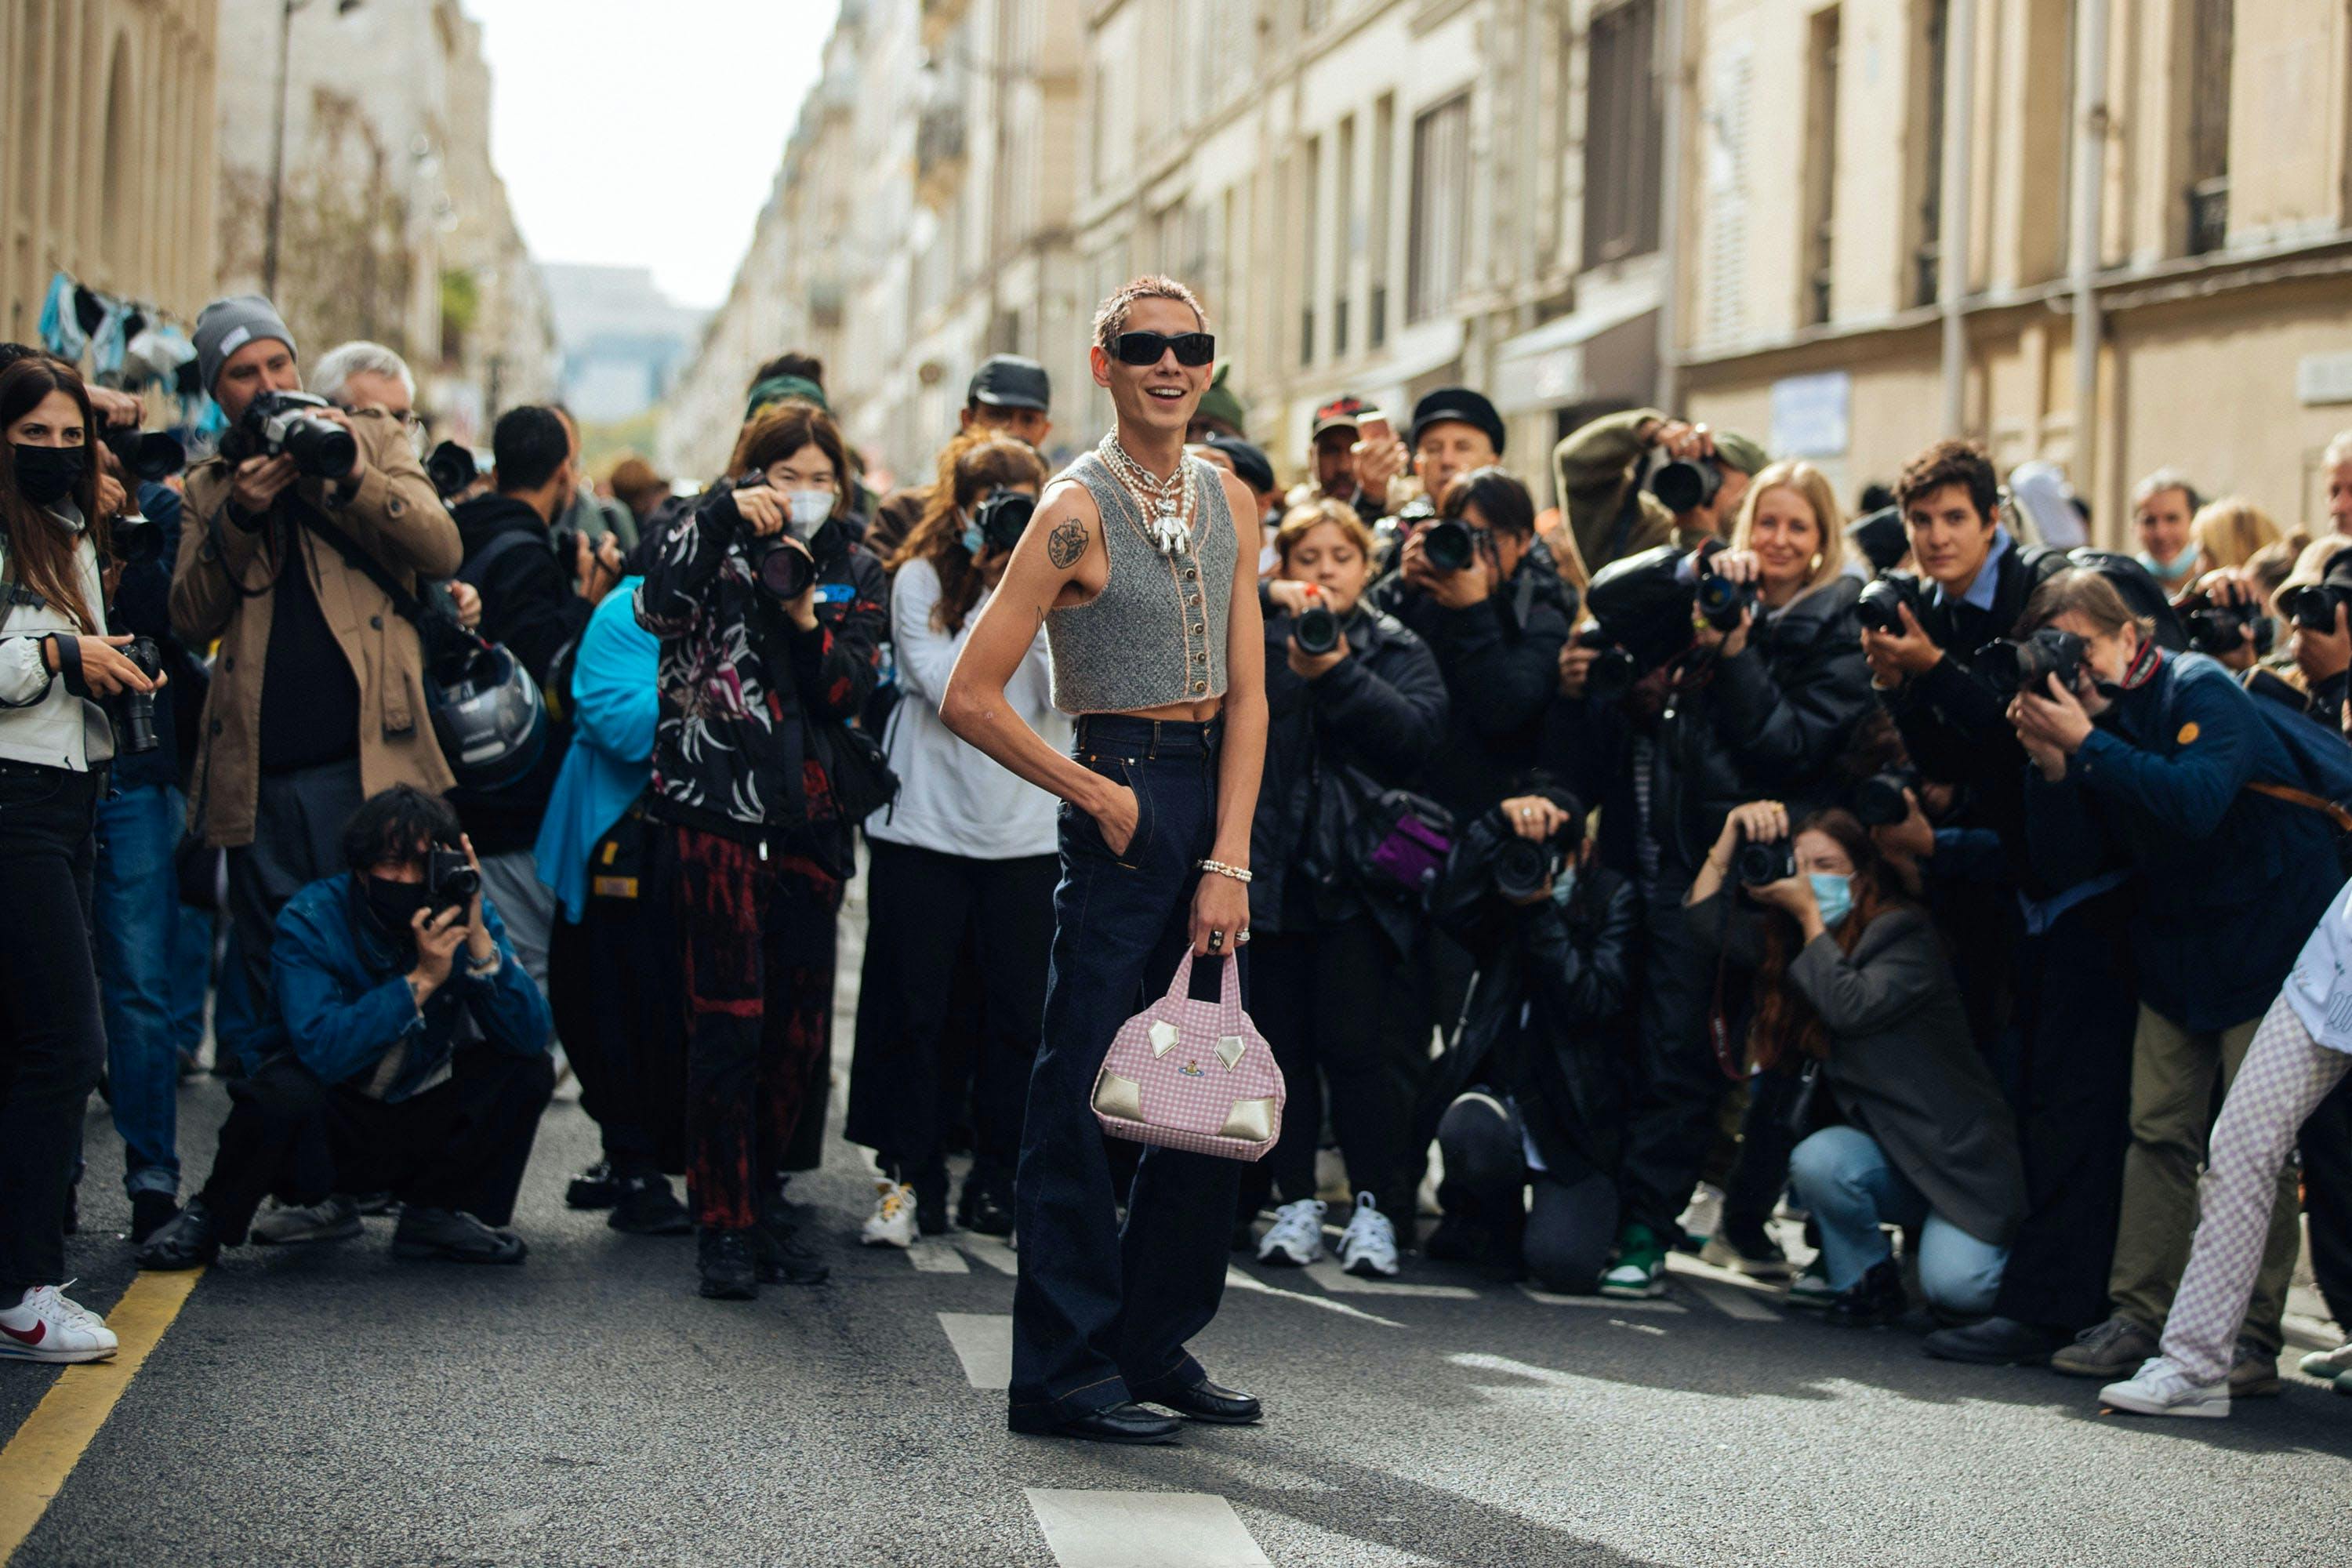 paris paparazzi person adult female woman shoe male man handbag sunglasses